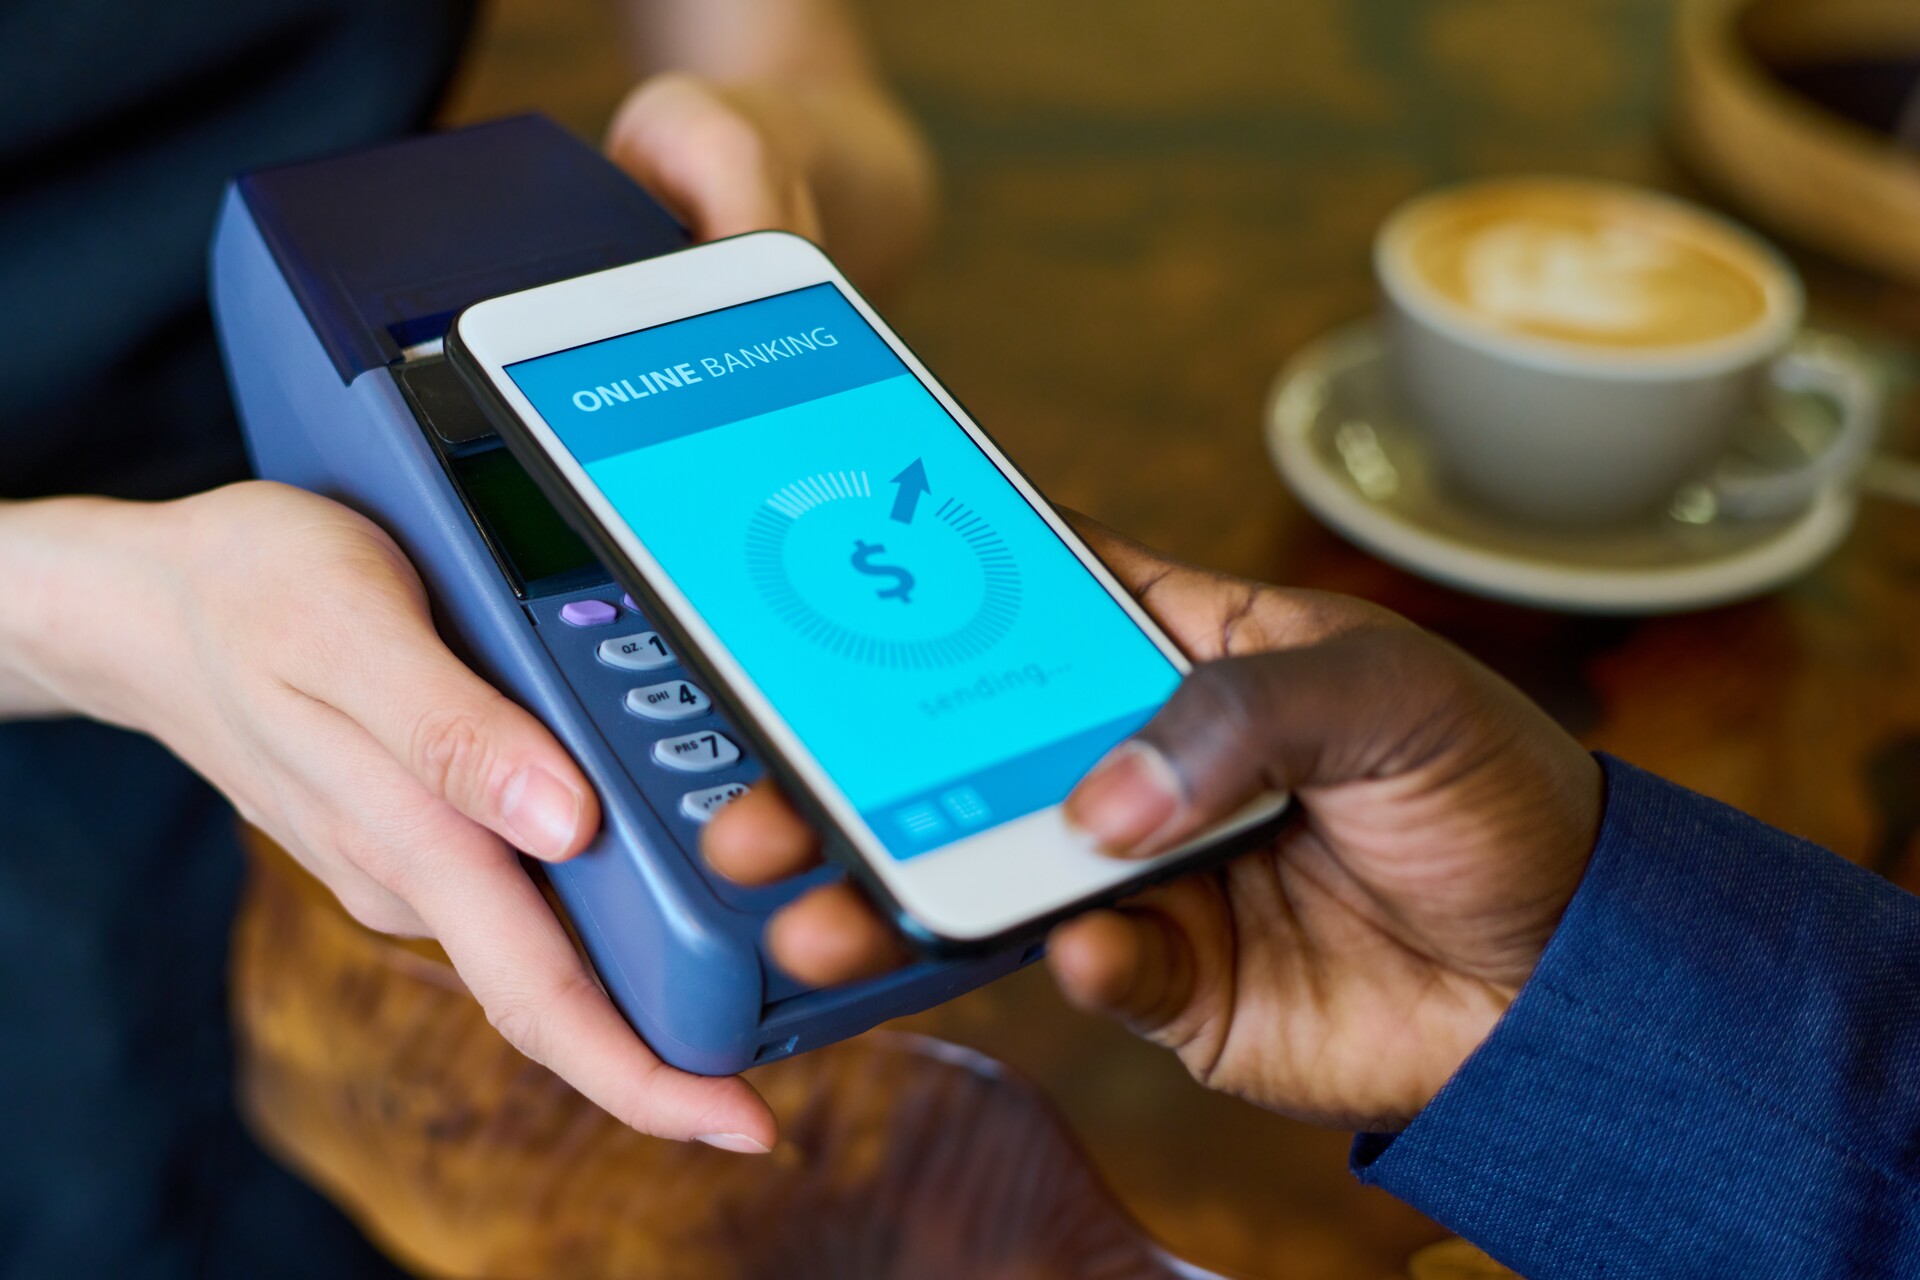 Pagamenti da mobile: i vantaggi del mobile payment sono la comodità, la rapidità e le caratteristiche di sicurezza aggiuntive, come le impronte digitali o il riconoscimento del volto